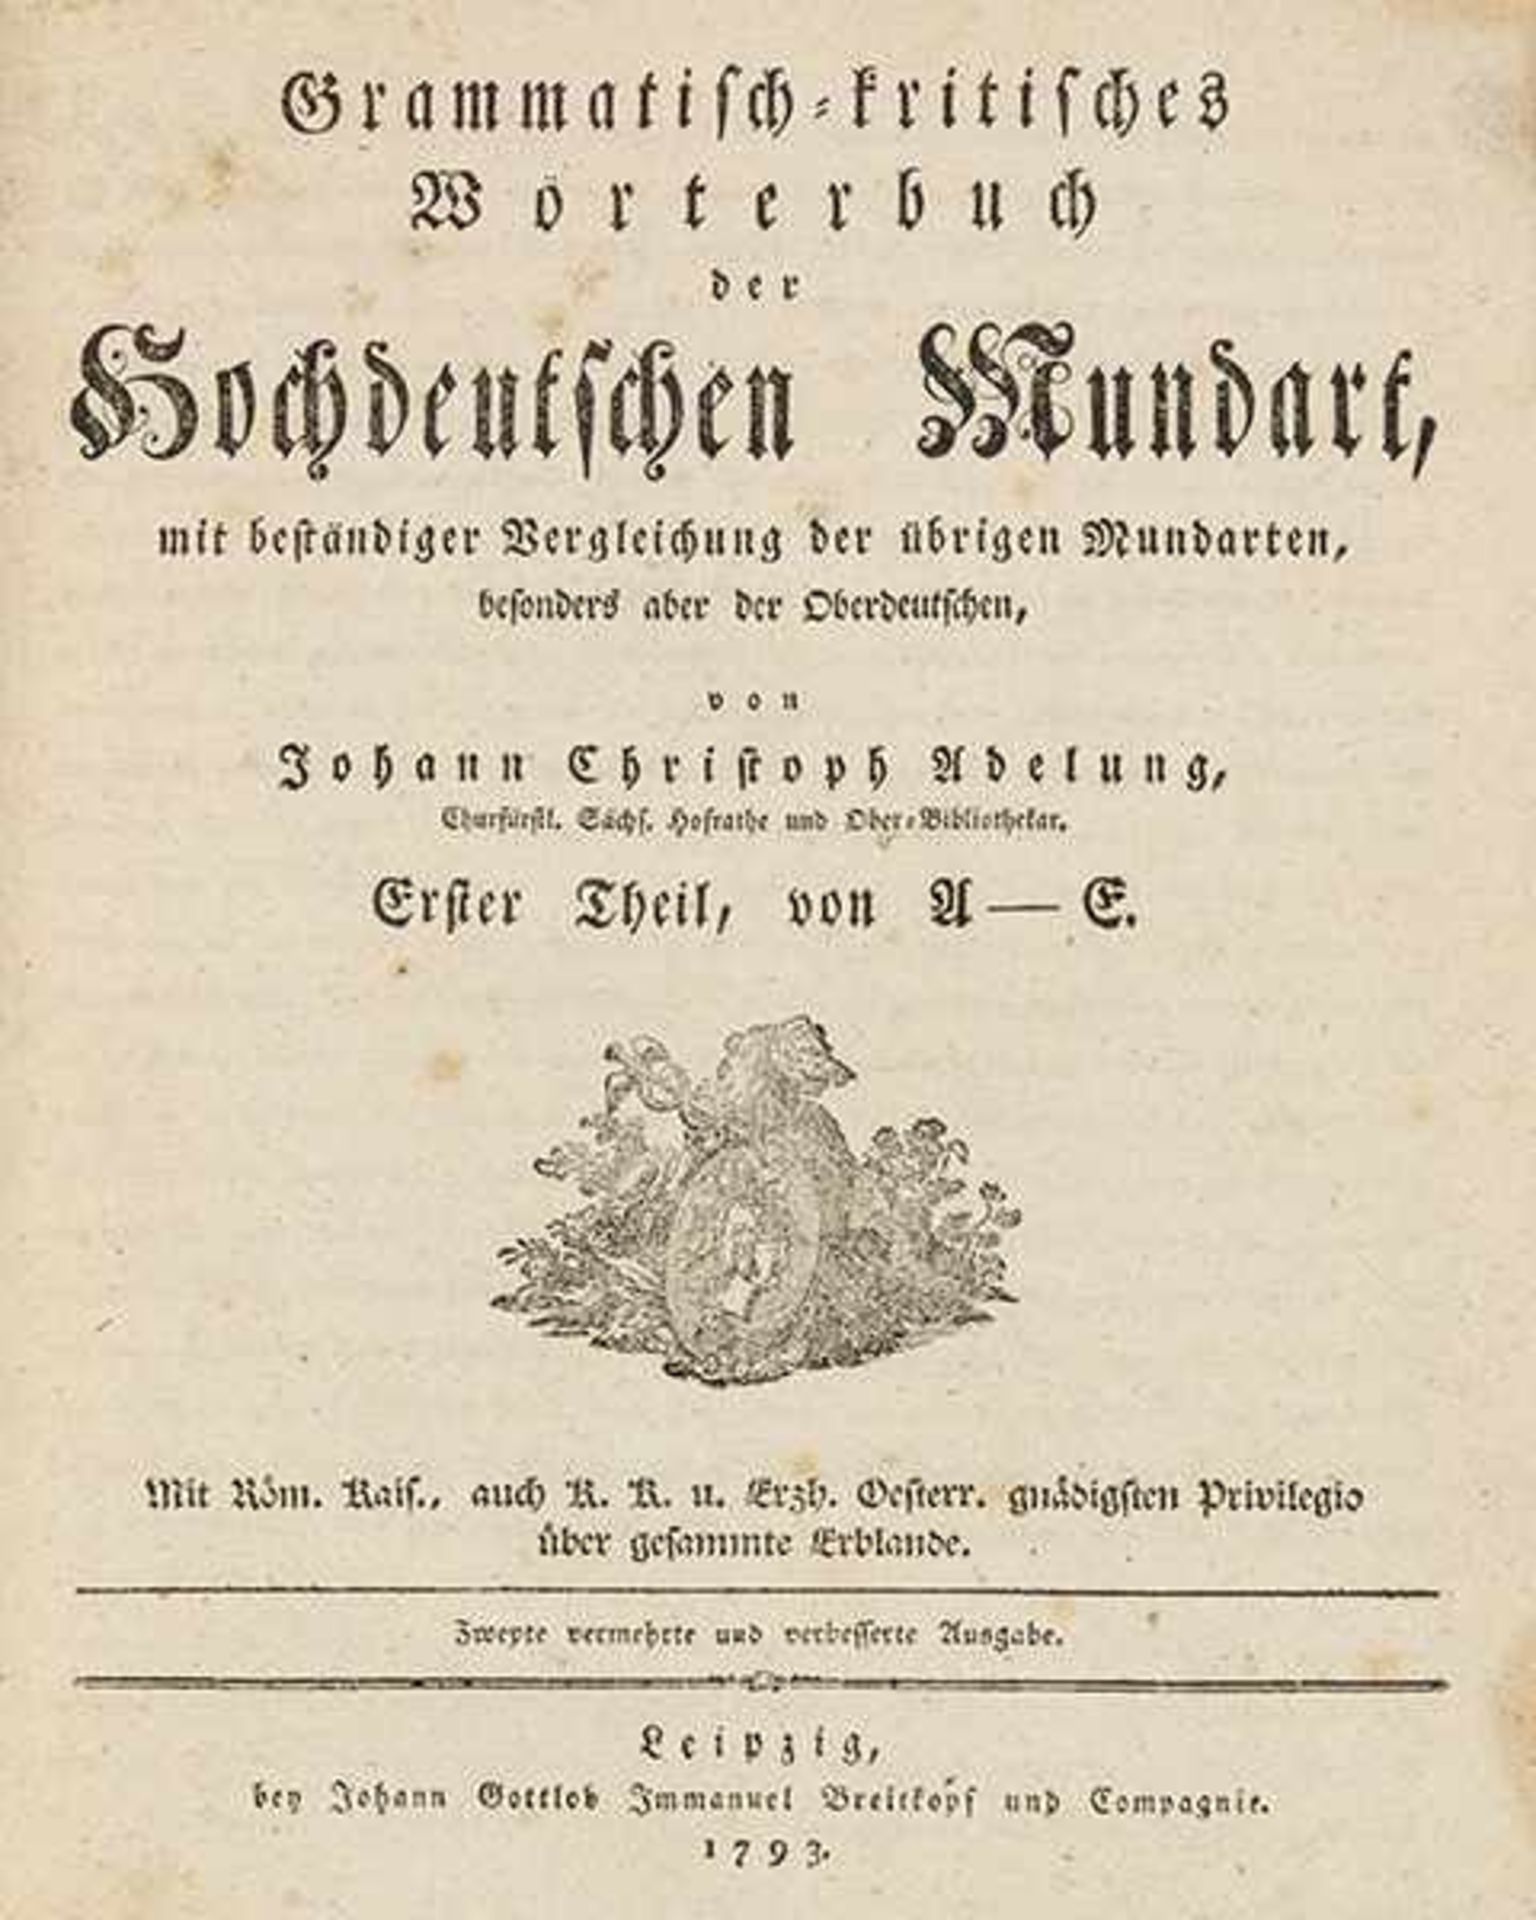 Sprachwissenschaft - - Adelung, Johann Christoph. Grammatisch-kritisches Wörterbuch der